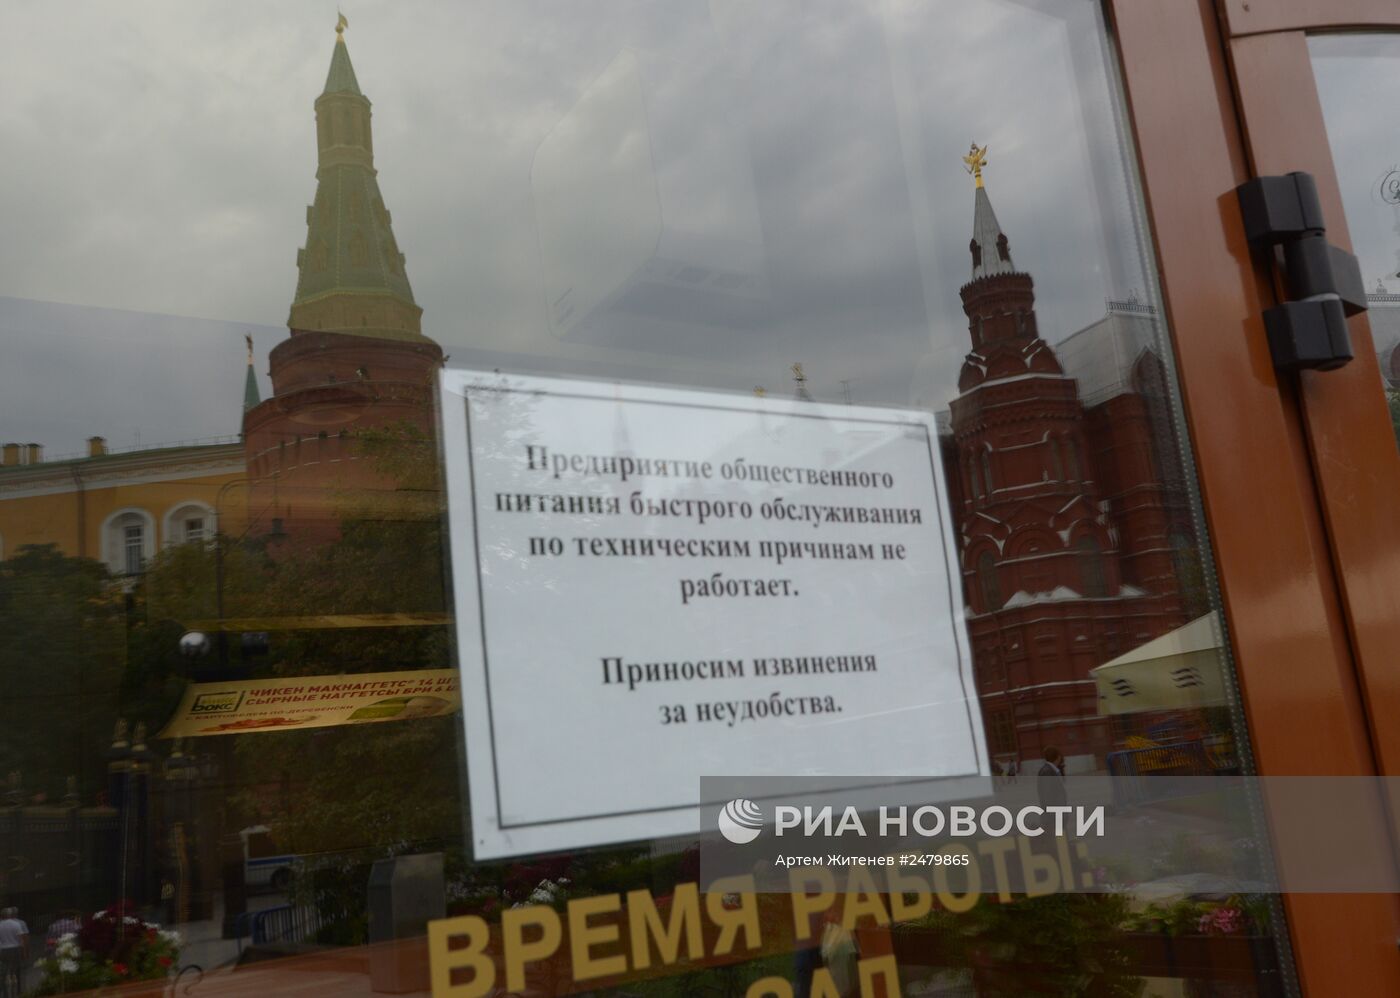 Роспотребнадзор временно закрыл четыре ресторана "Макдоналдс" в Москве